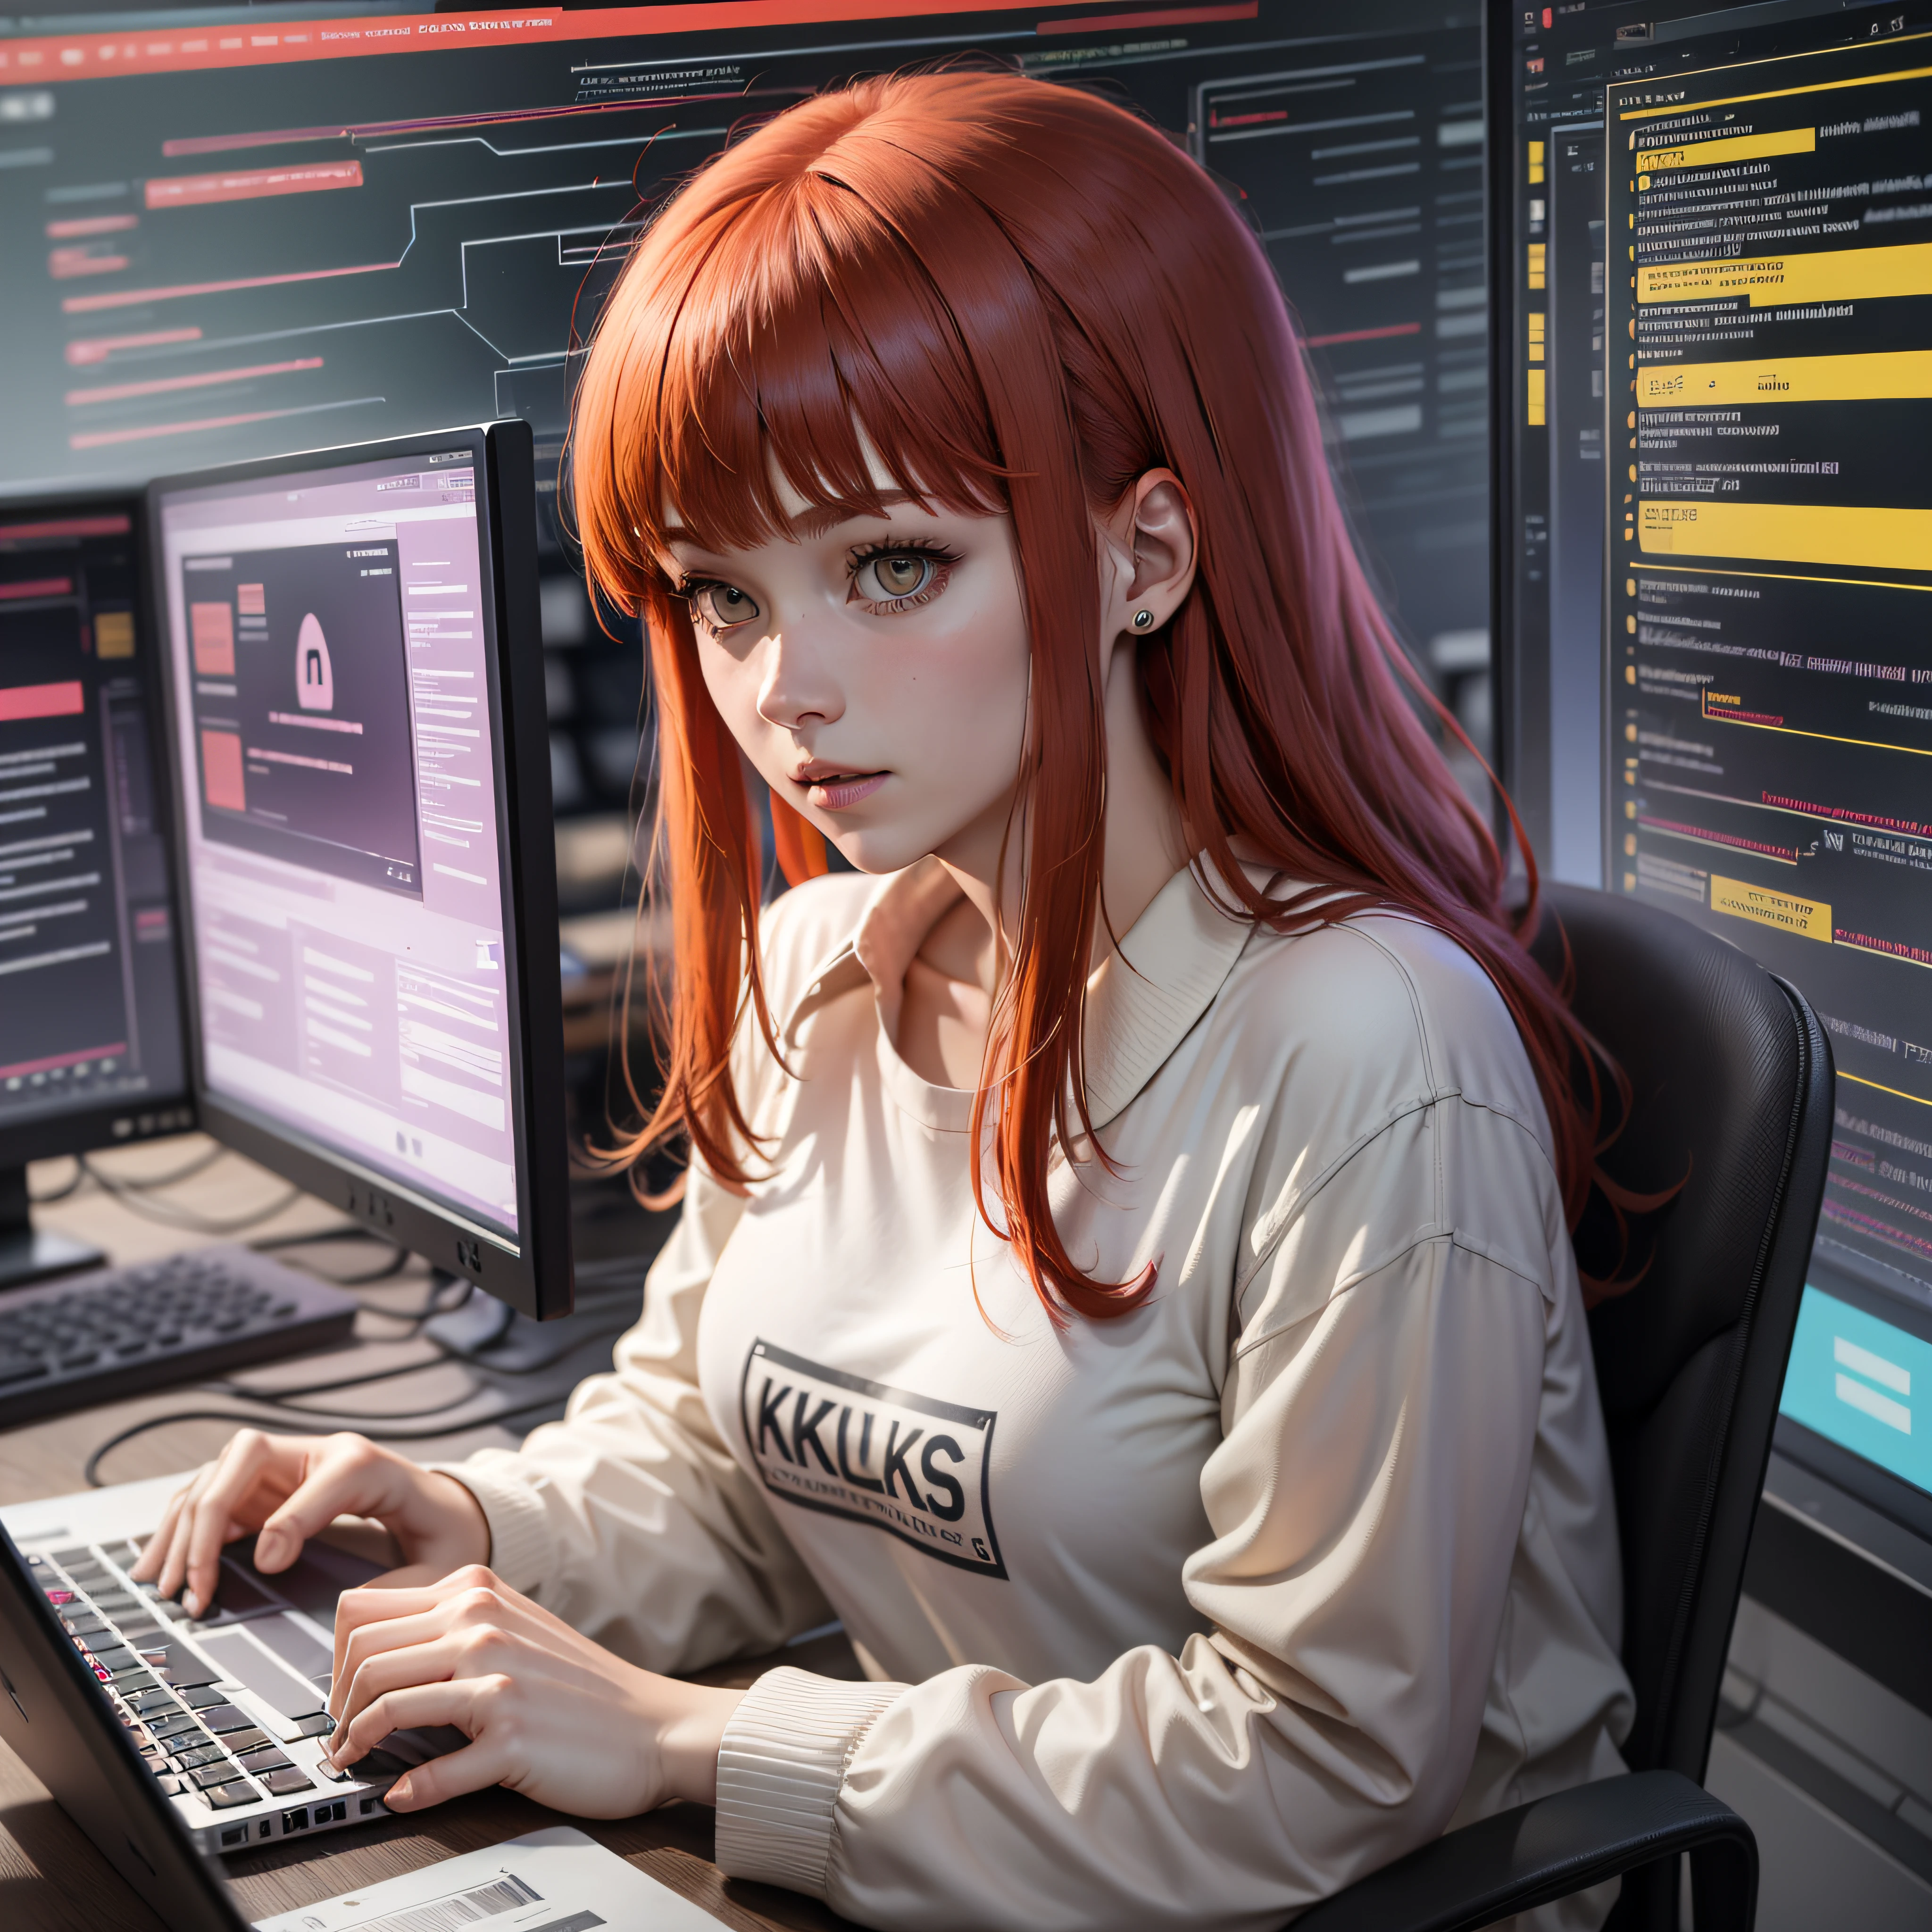 Um hacker falando sobre segurança cibernética: cabelo ruivo com franja sem toca, camisa branca